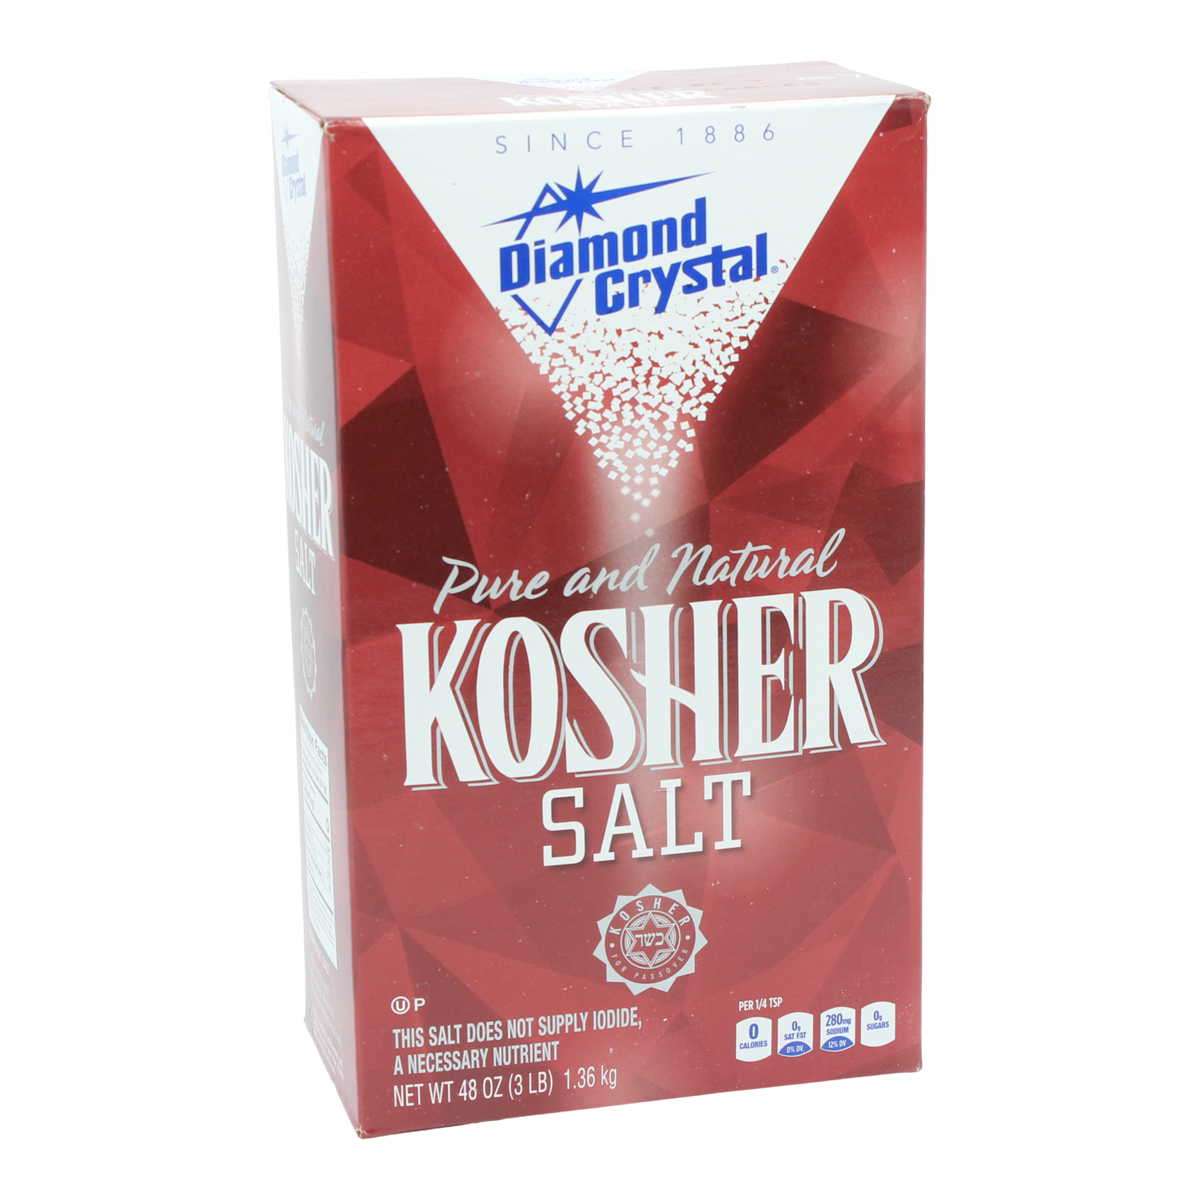 diamond-crystal-kosher-salt-konrads-specialty-foods-ingredients